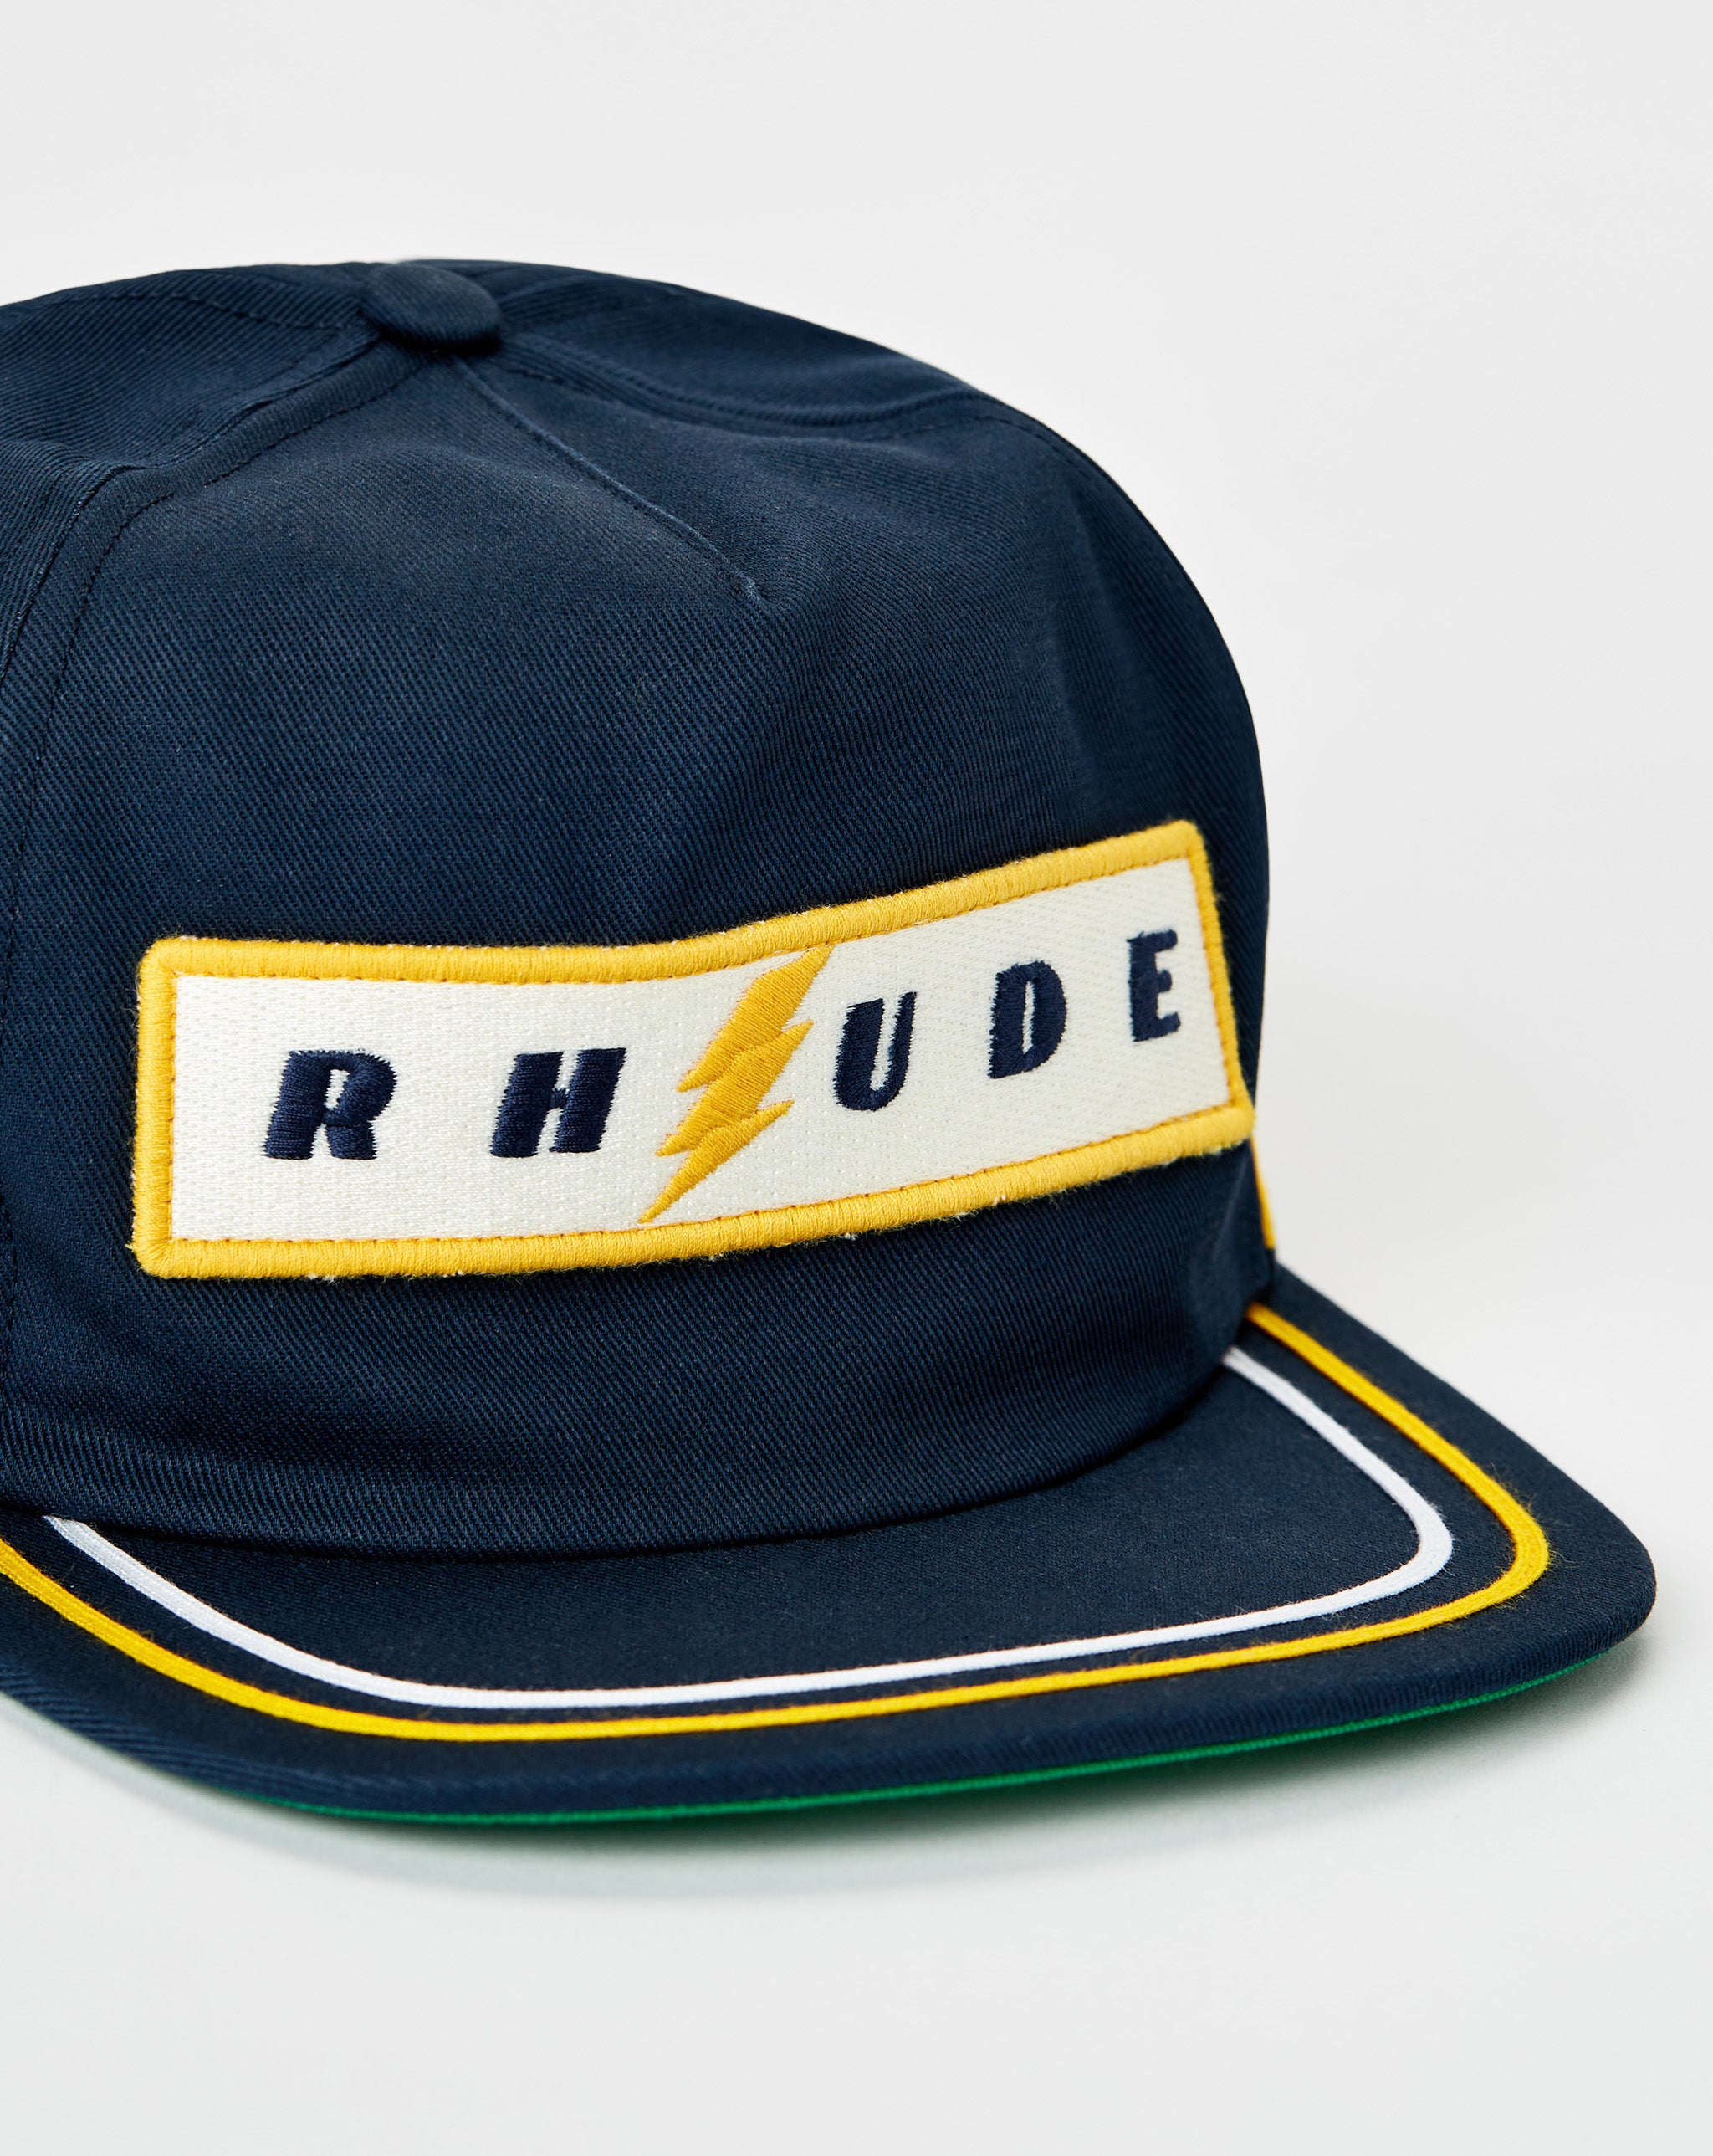 Rhude Structured Hat 2  - Cheap Urlfreeze Jordan outlet